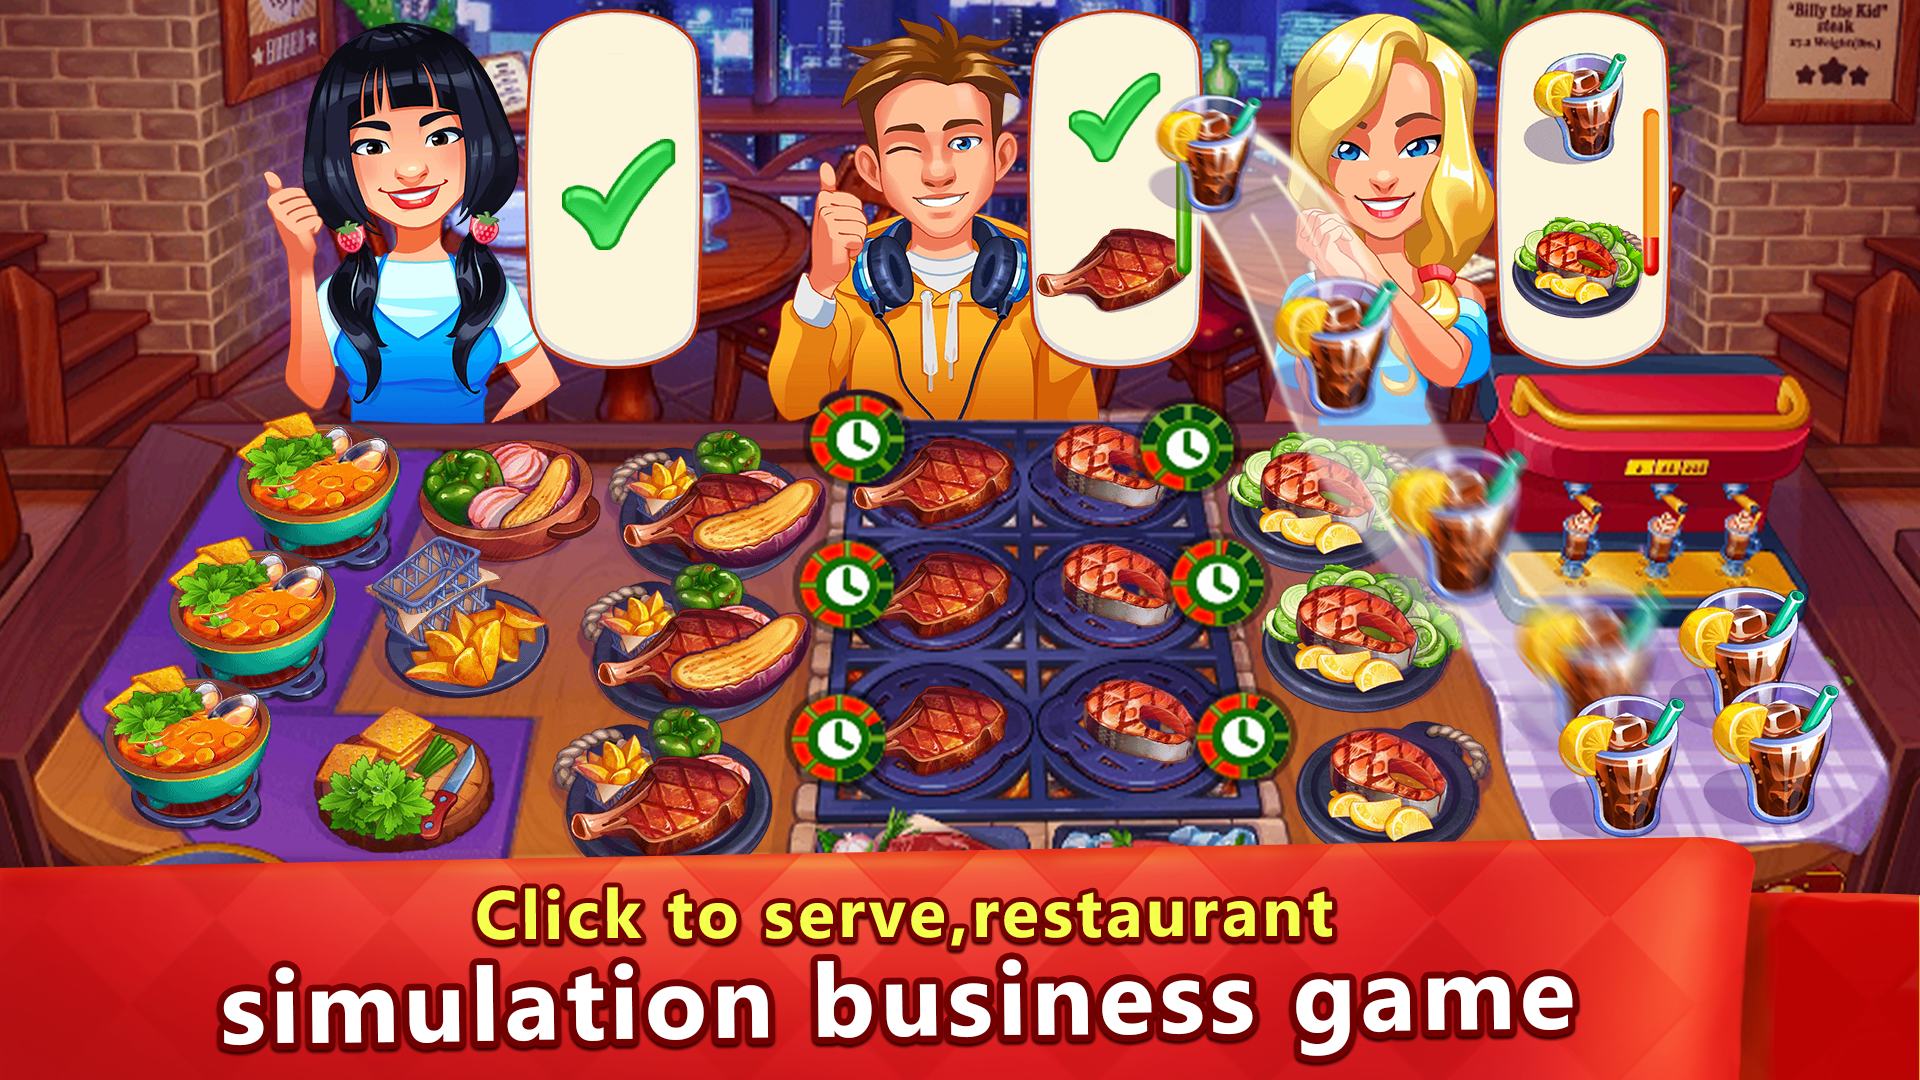 Screenshot 1 of 主廚 - 廚房餐廳烹飪遊戲 2.1